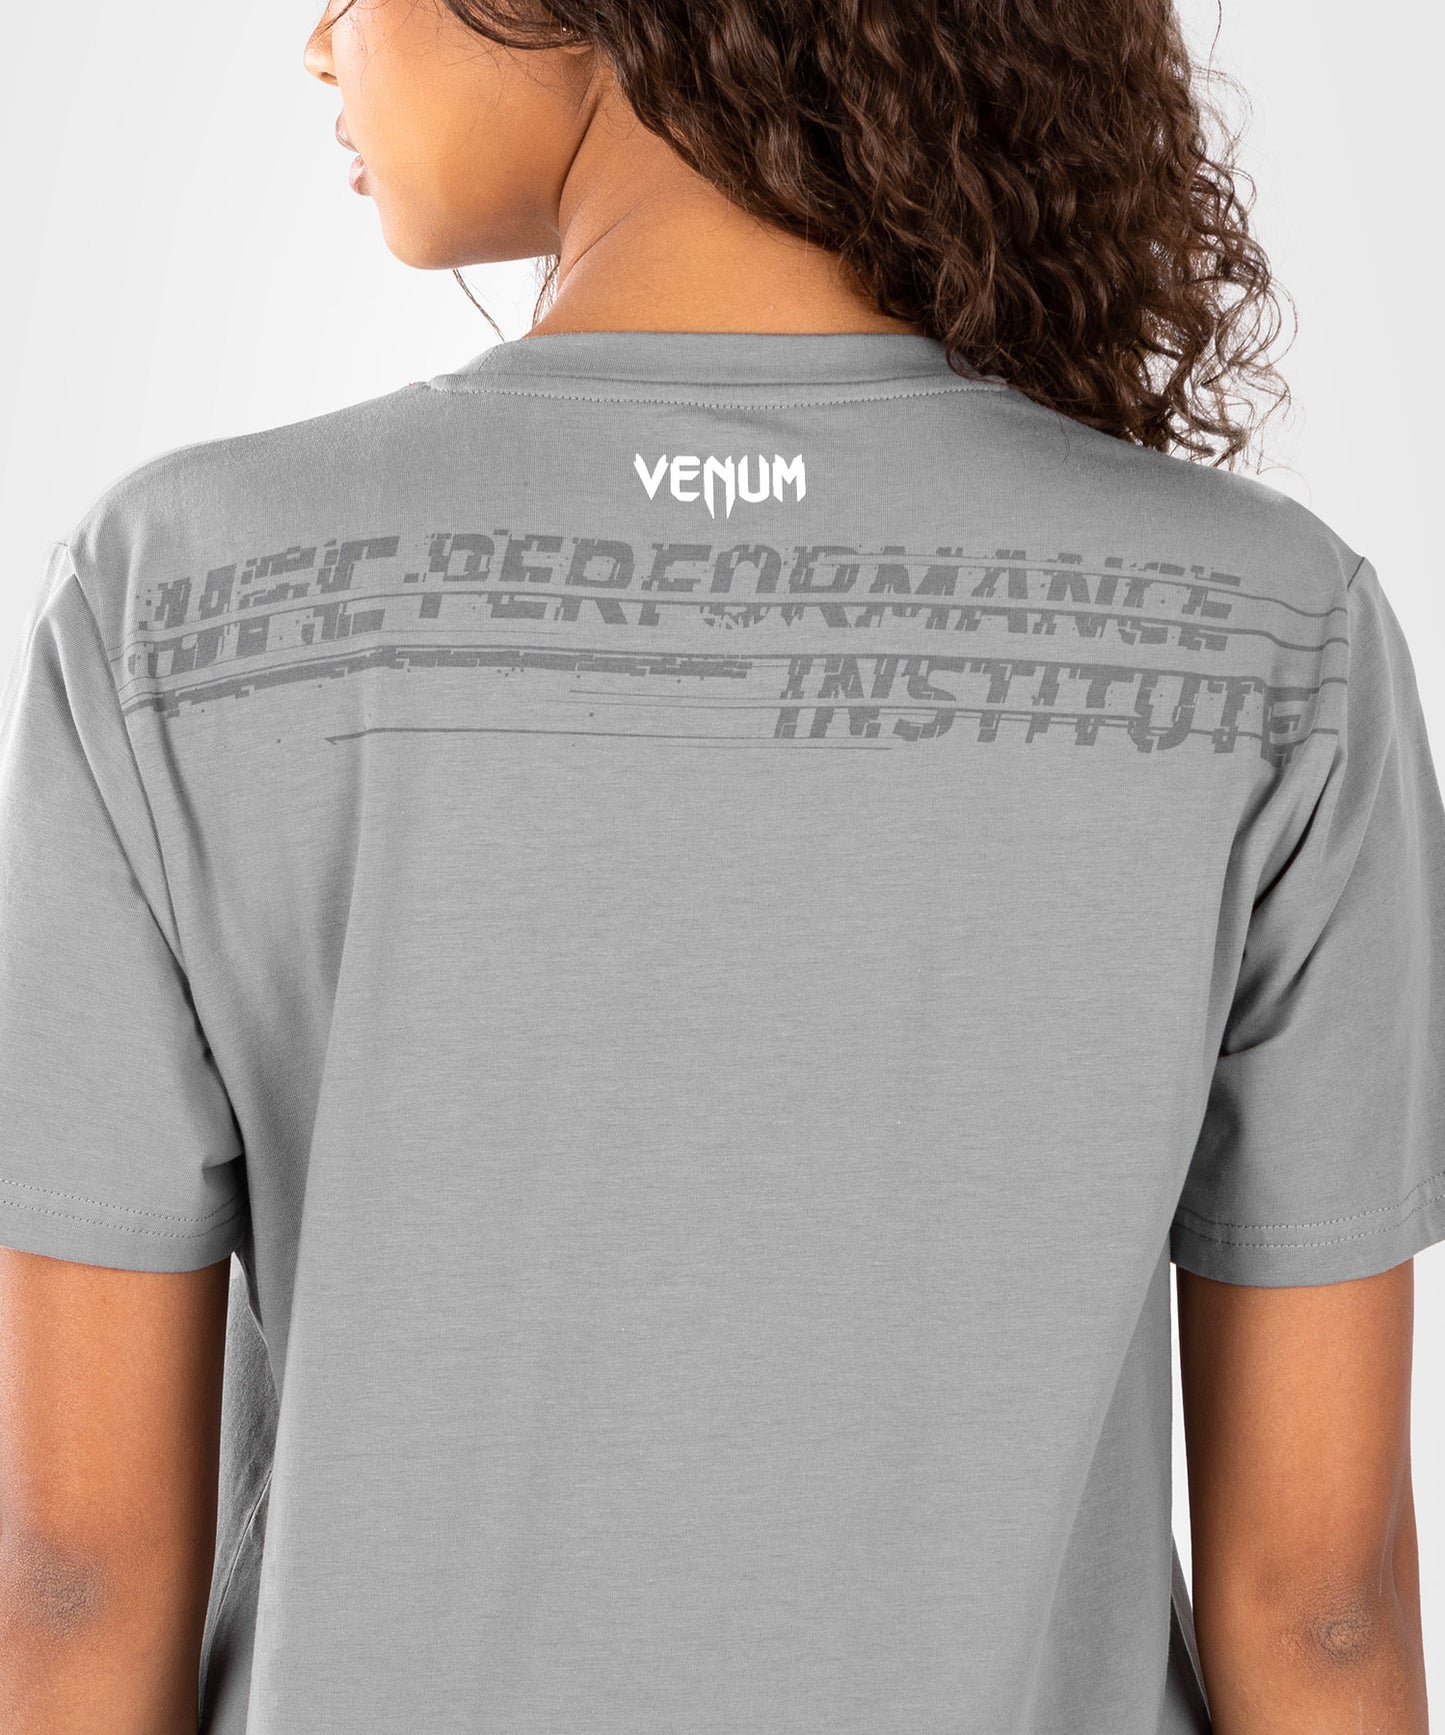 UFC Venum Performance Institute 2.0 T-shirt Grey